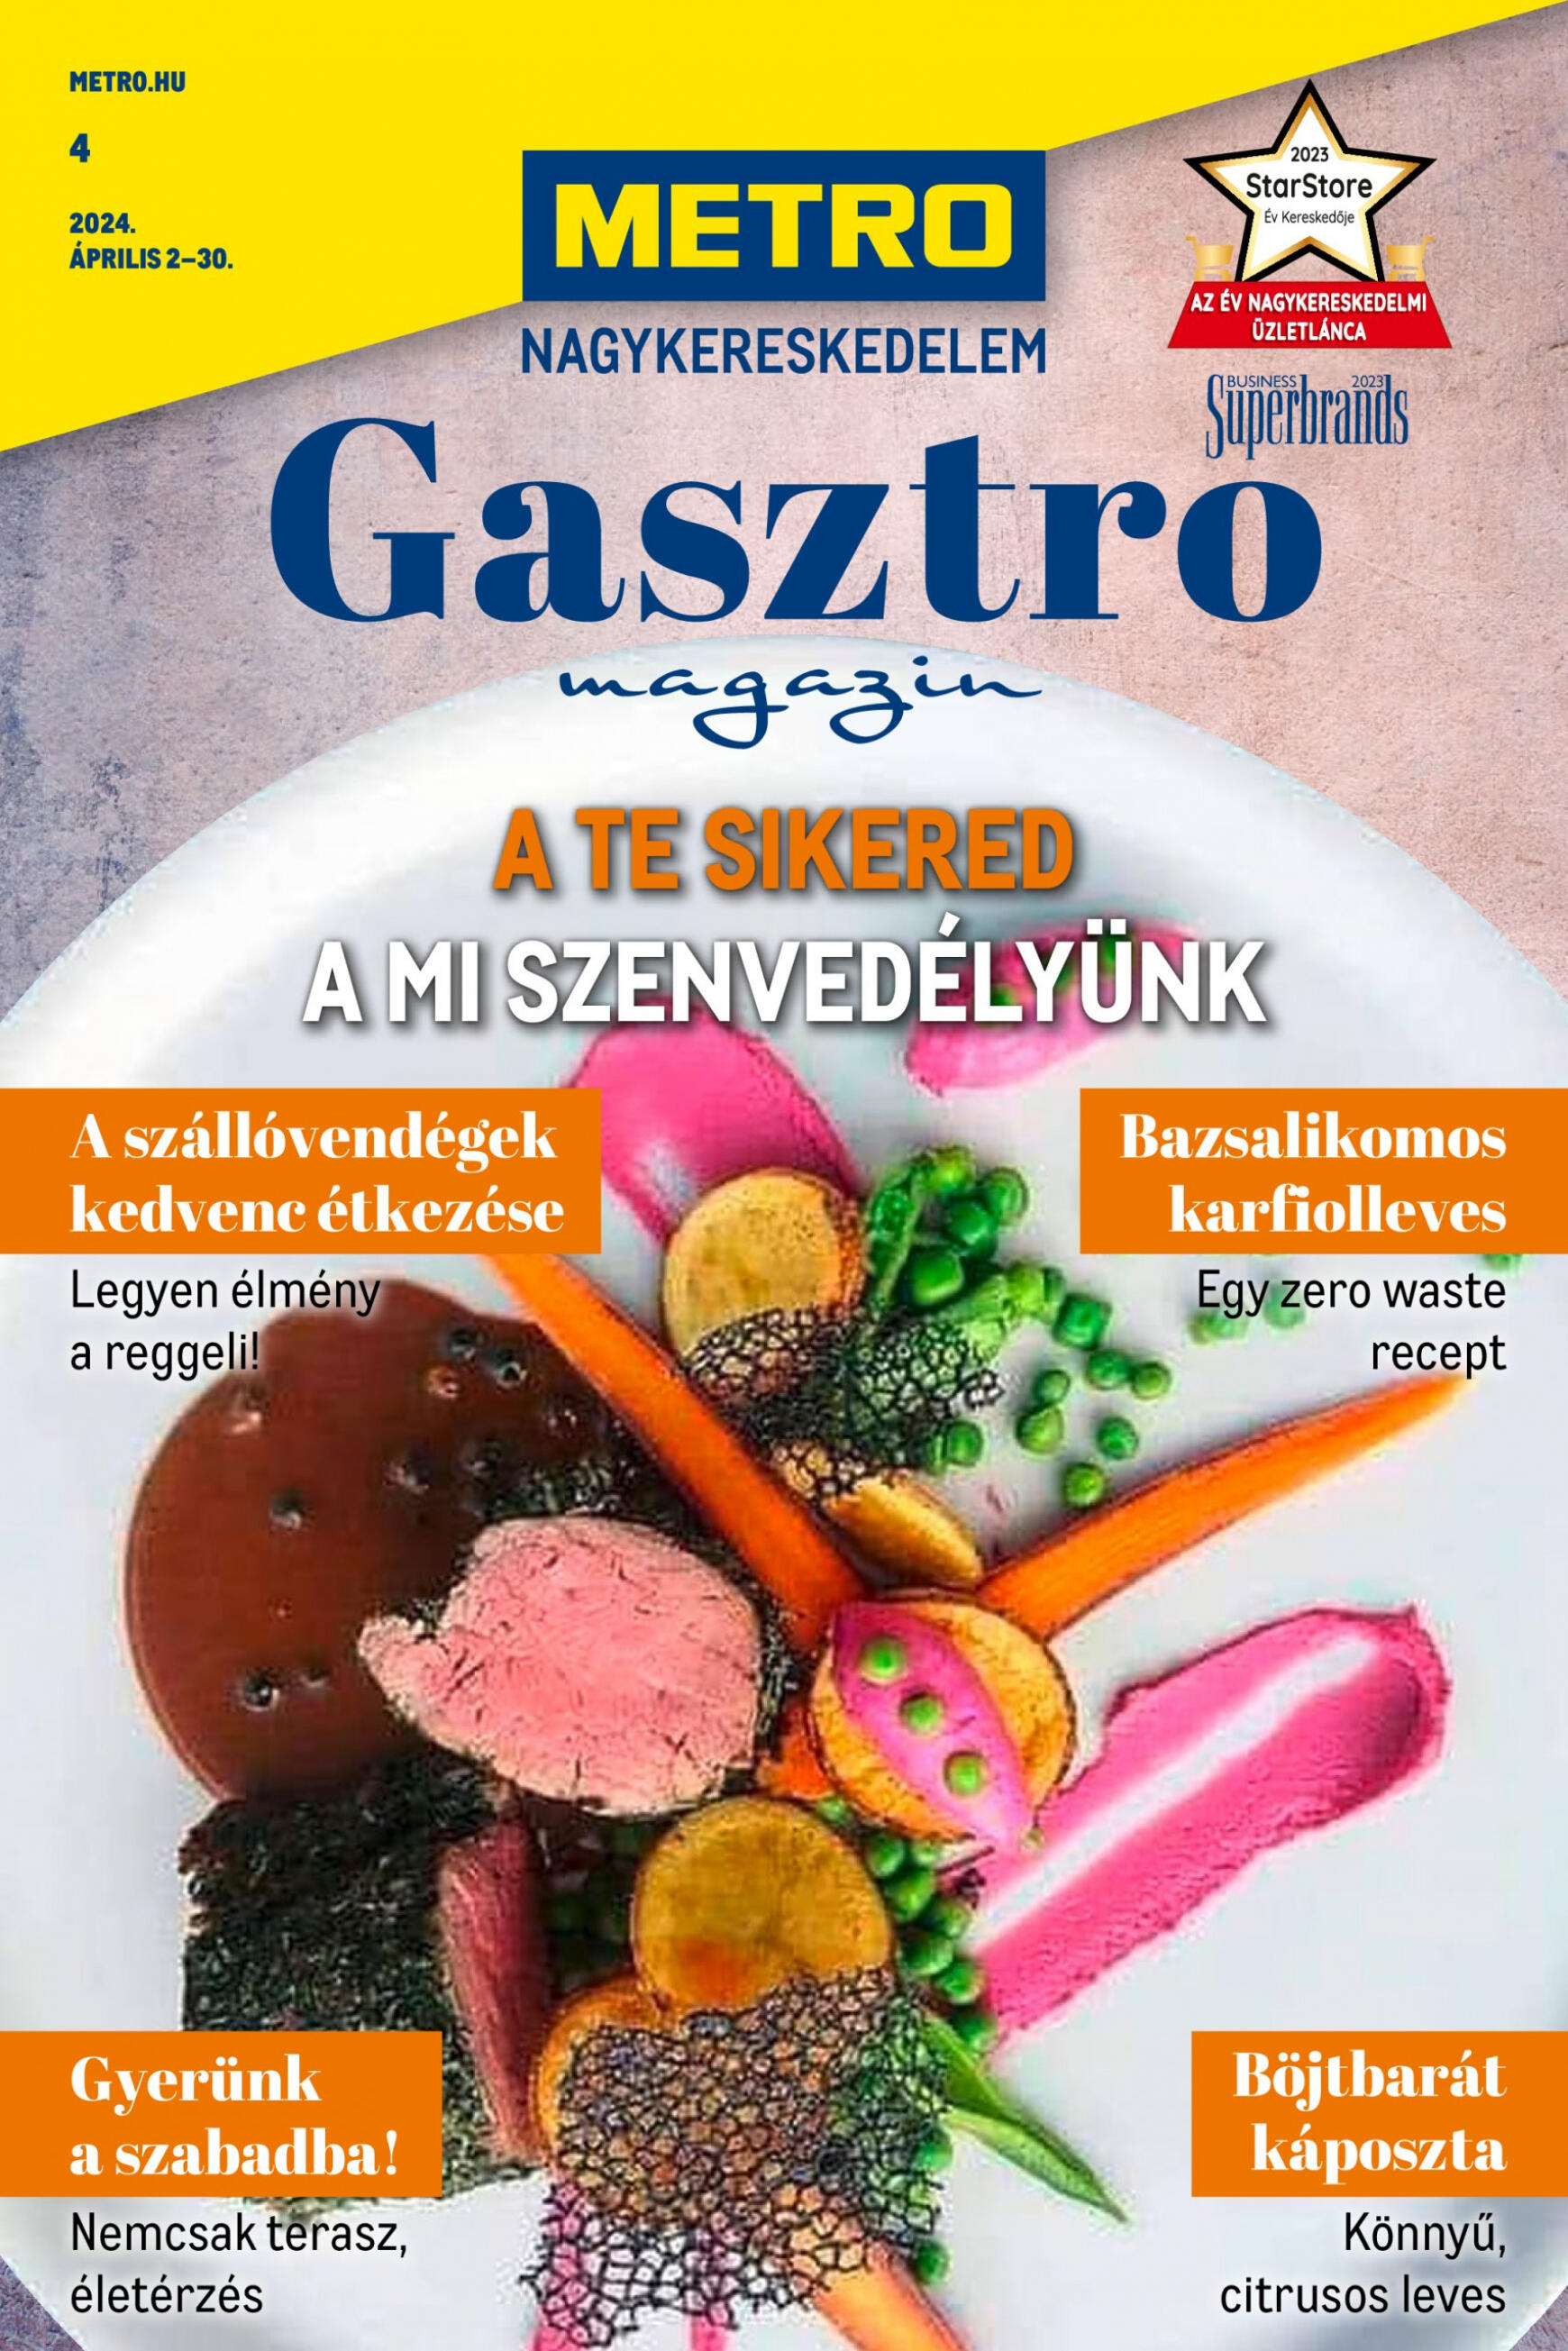 metro - Aktuális újság Metro - Gasztro magazin 04.02. - 04.30.